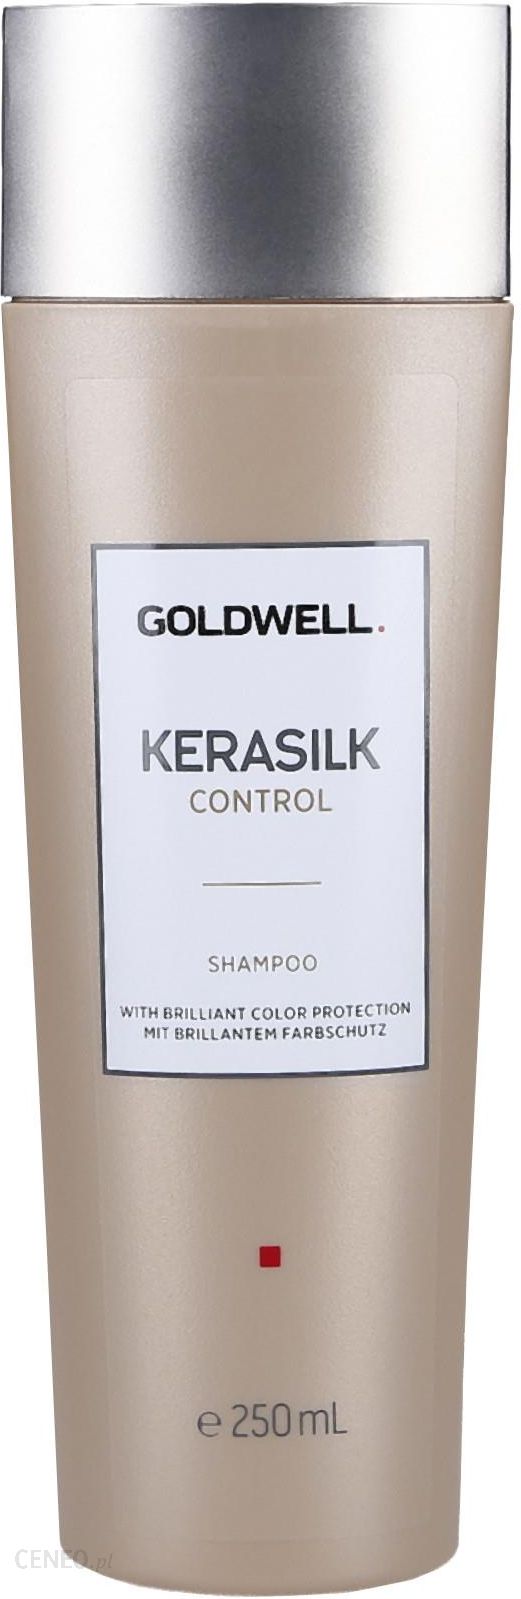 szampon kerasilk goldwell po zabiegu keratynowym